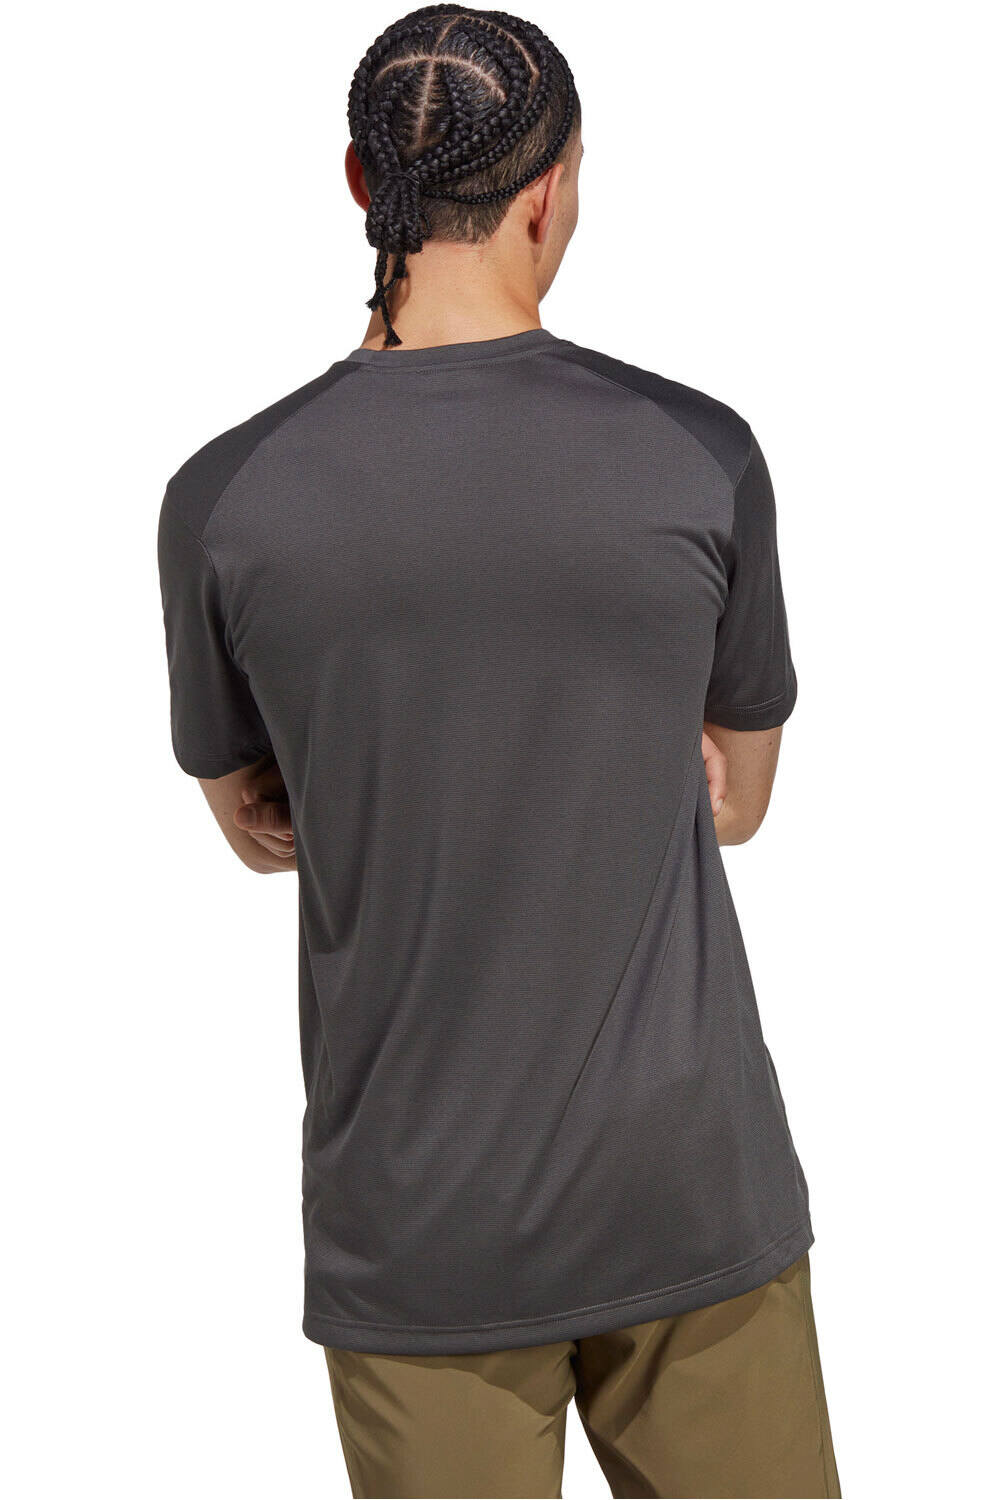 Adidas TERREX Multi T-Shirt (HM4048) black - Camisetas hombre